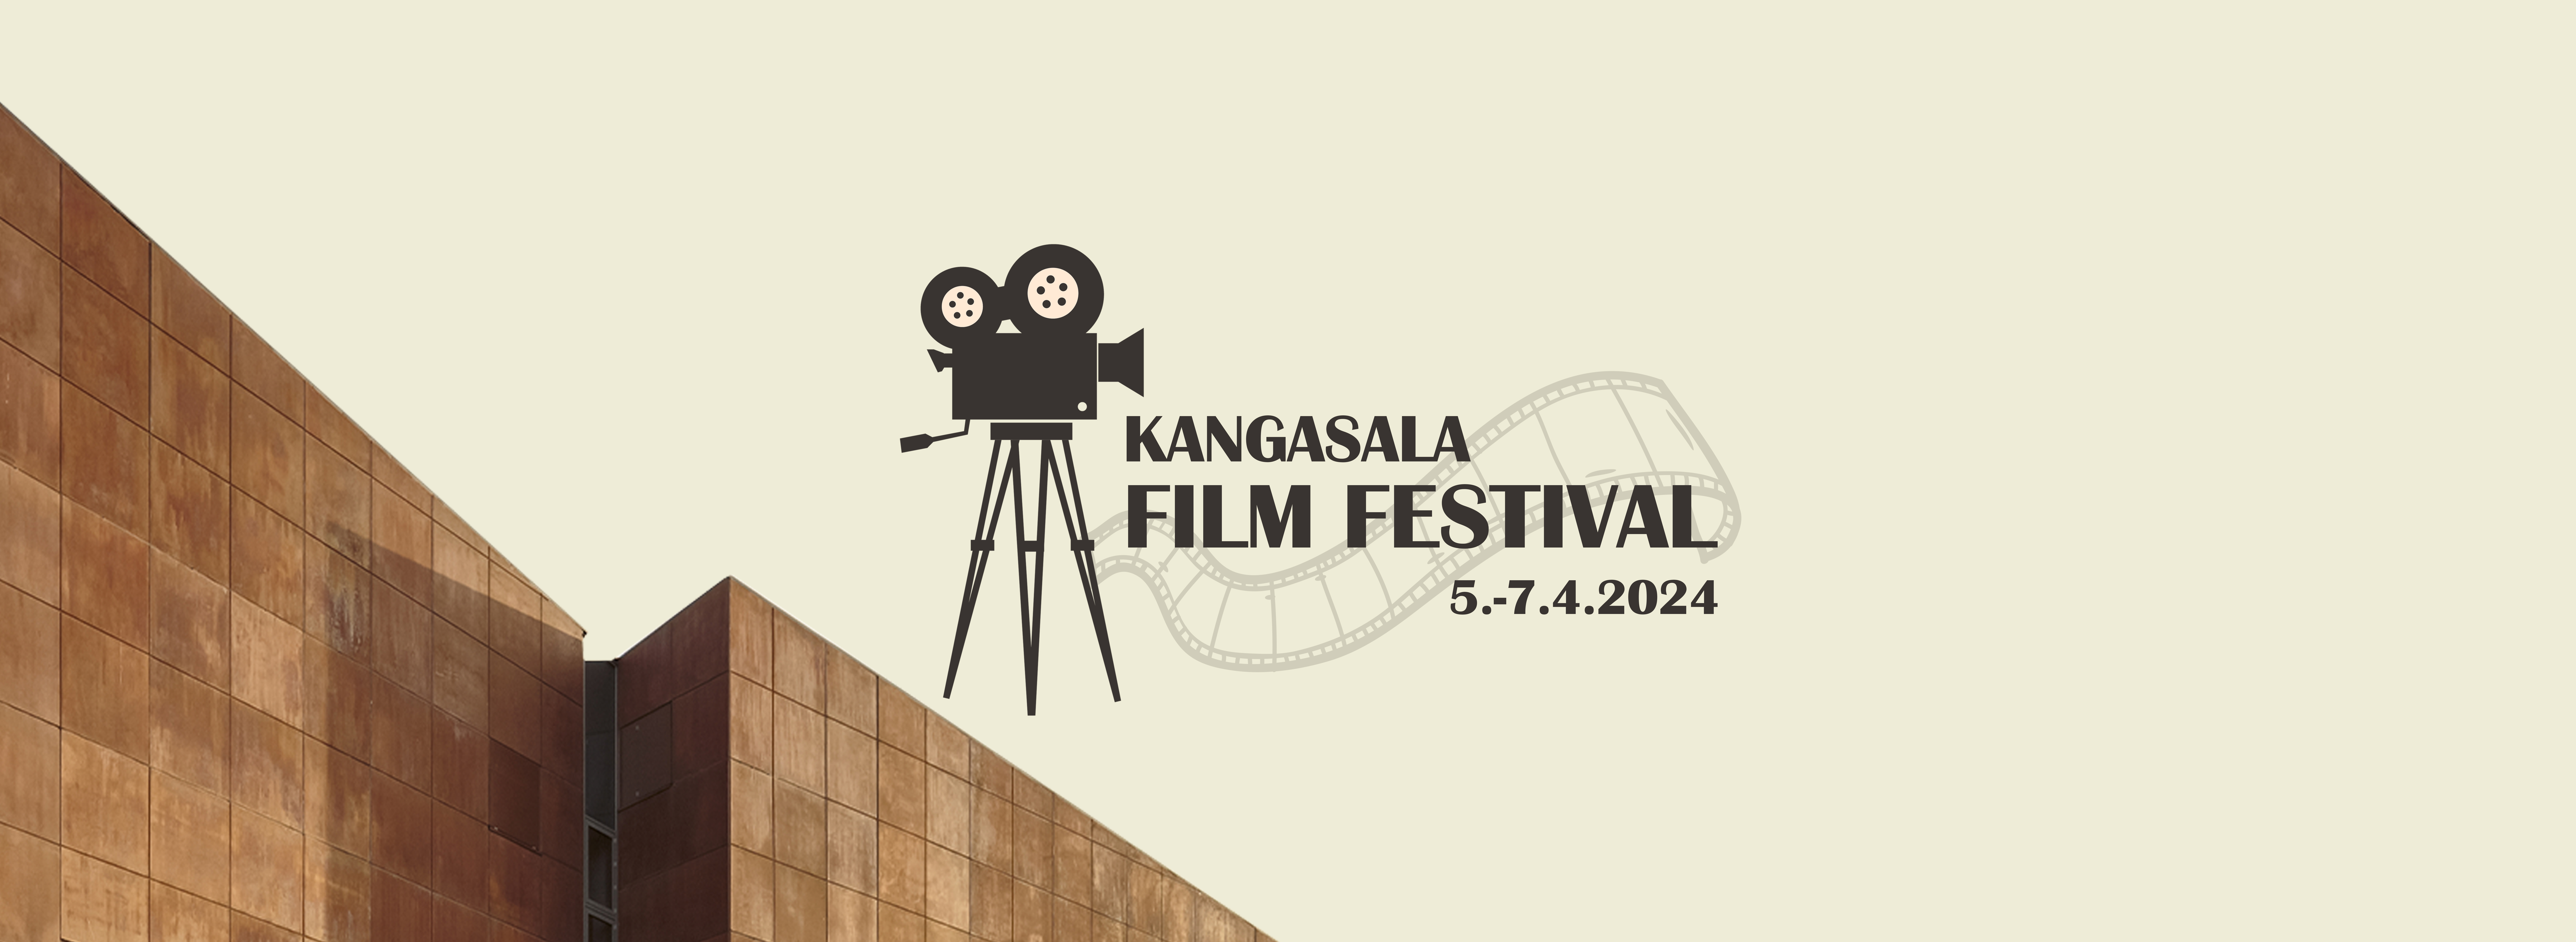 Kangasala Film Festival 5.-7.4.2024